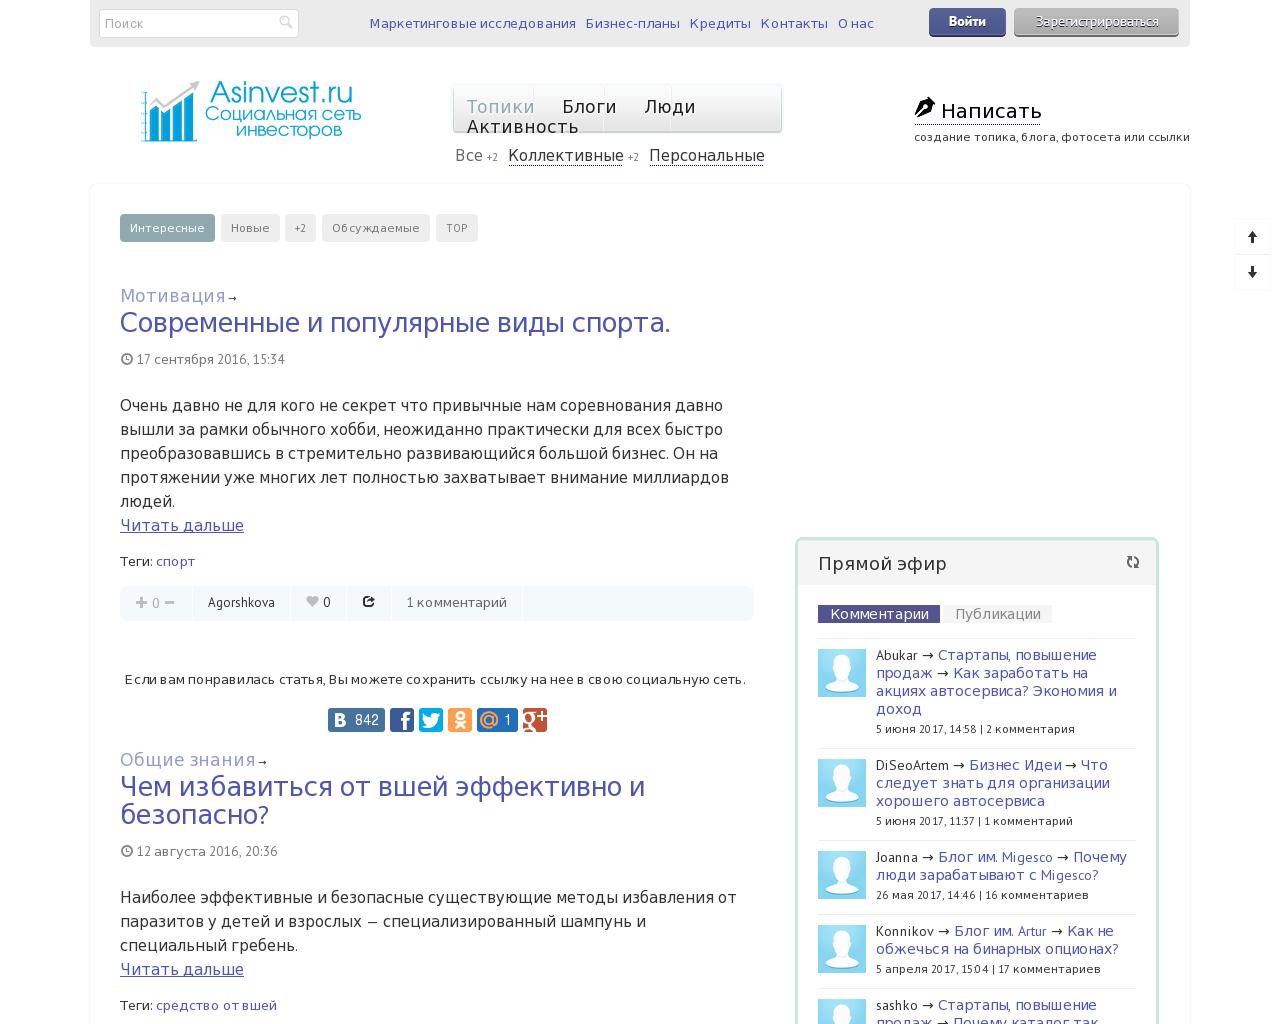 Изображение сайта asinvest.ru в разрешении 1280x1024